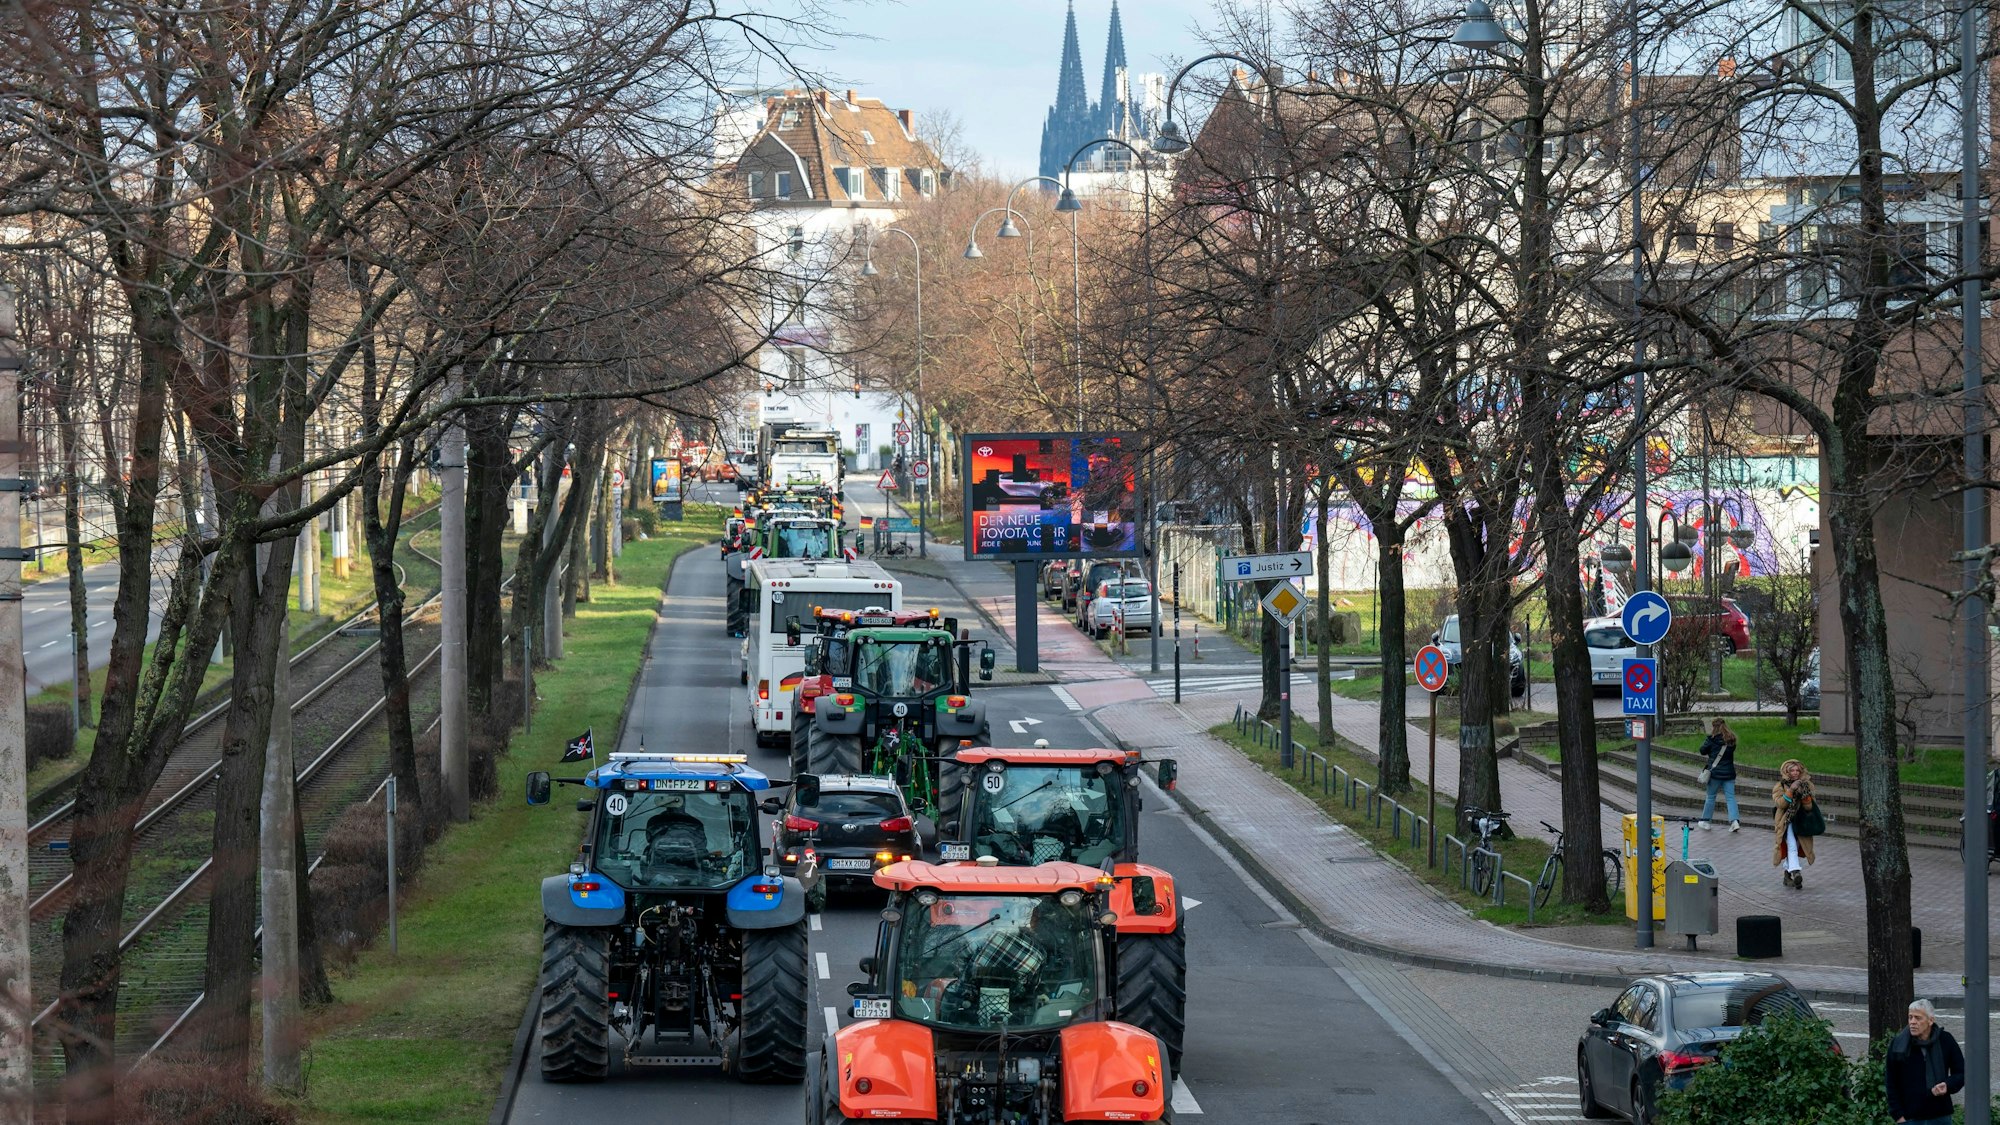 Traktoren fahren eine Straße in Köln entlang, im Hintergrund ist der Dom zu sehen.